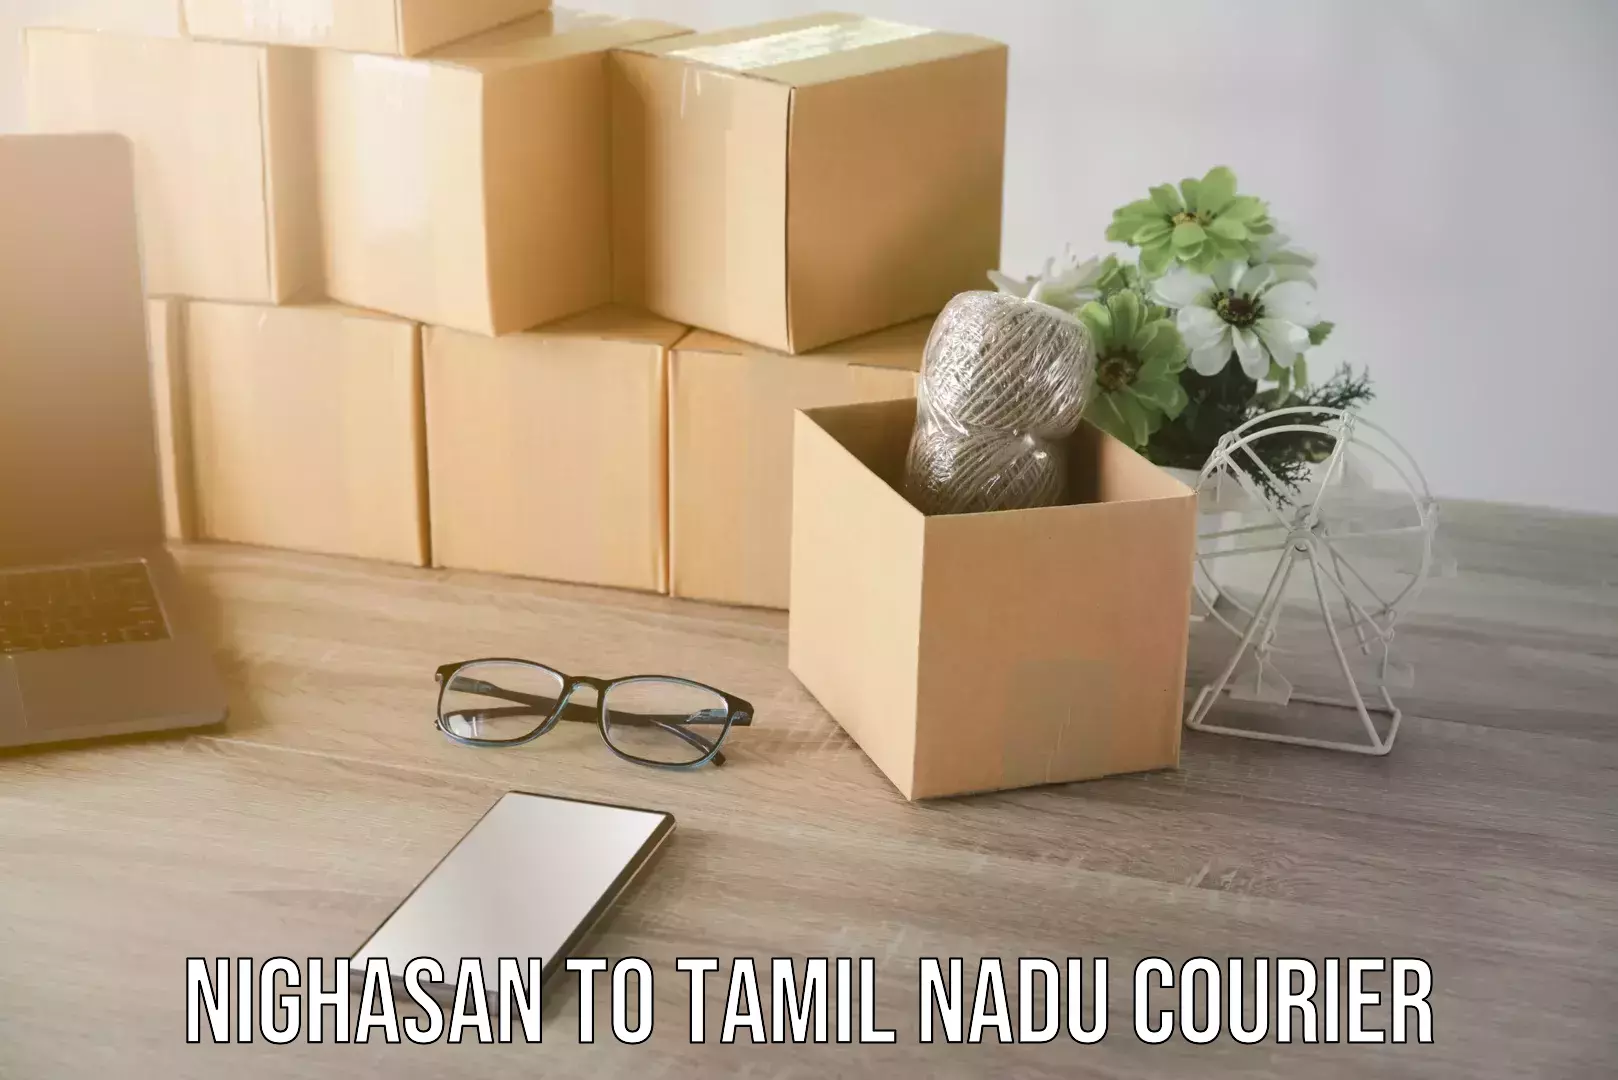 Furniture transport and storage Nighasan to Tamil Nadu